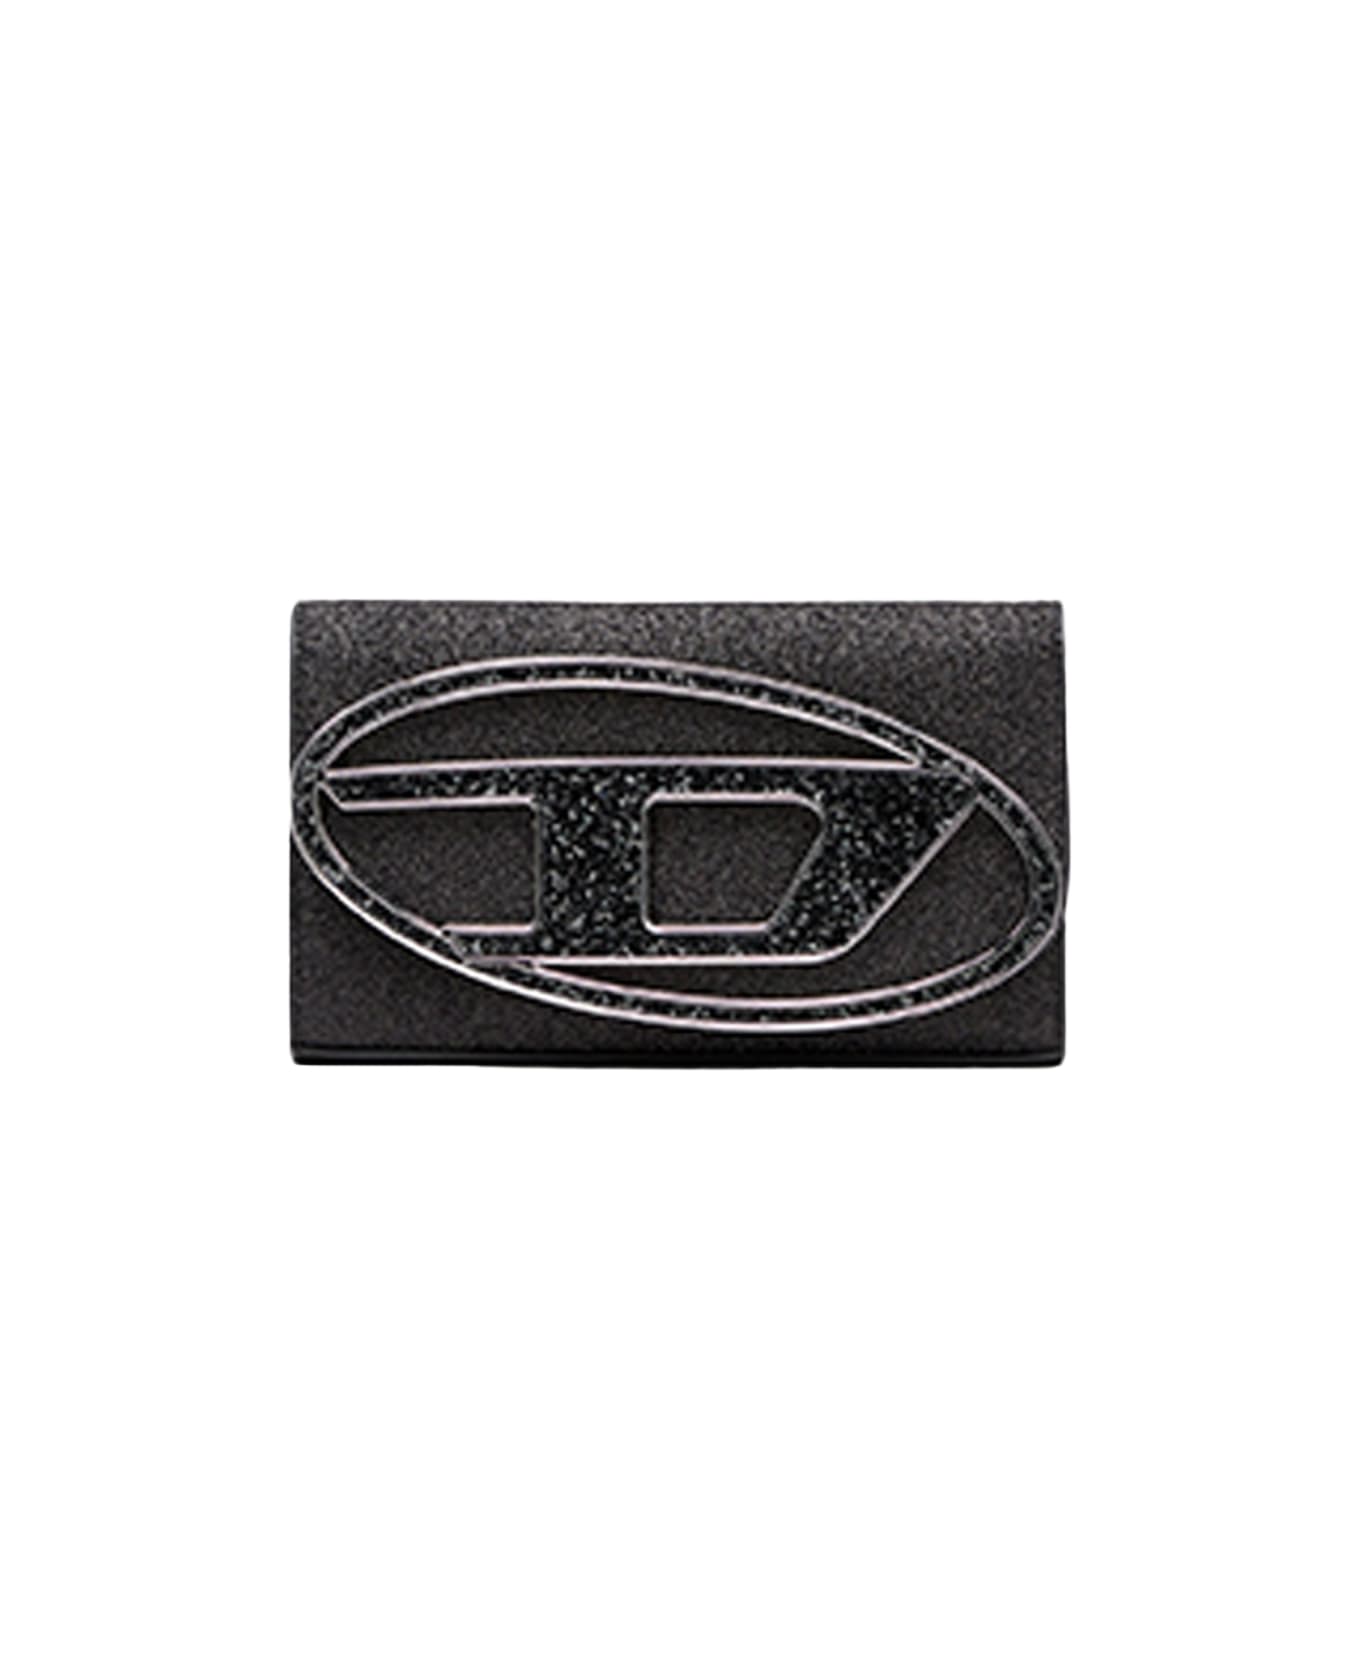 Diesel 1dr 1dr Wallet Strap Sparkly Black Purse With Shoulder Strap - 1dr Wallet Strap - black 財布